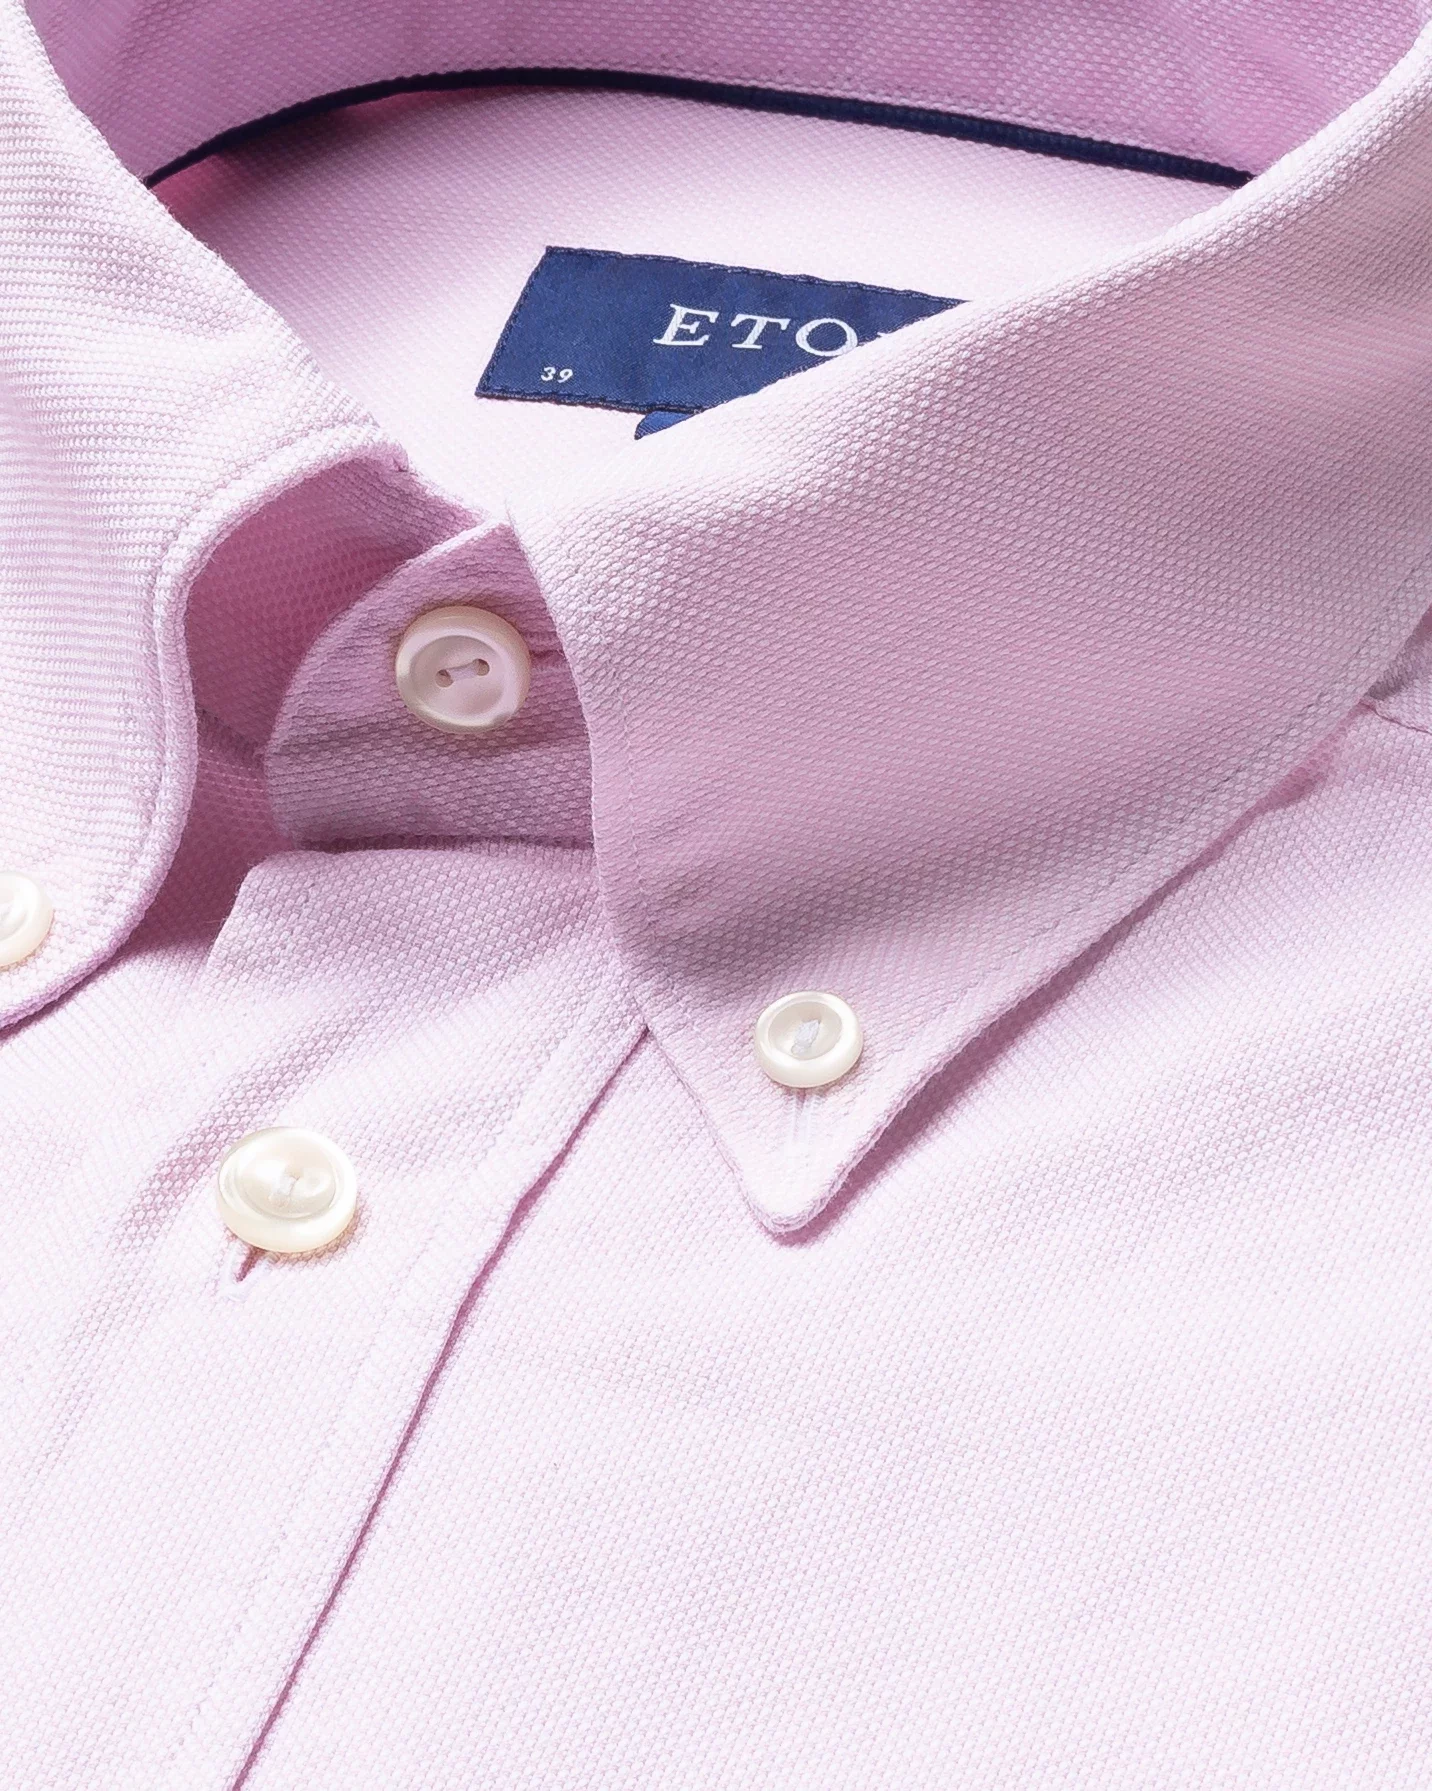 Eton - pink oxford shirt